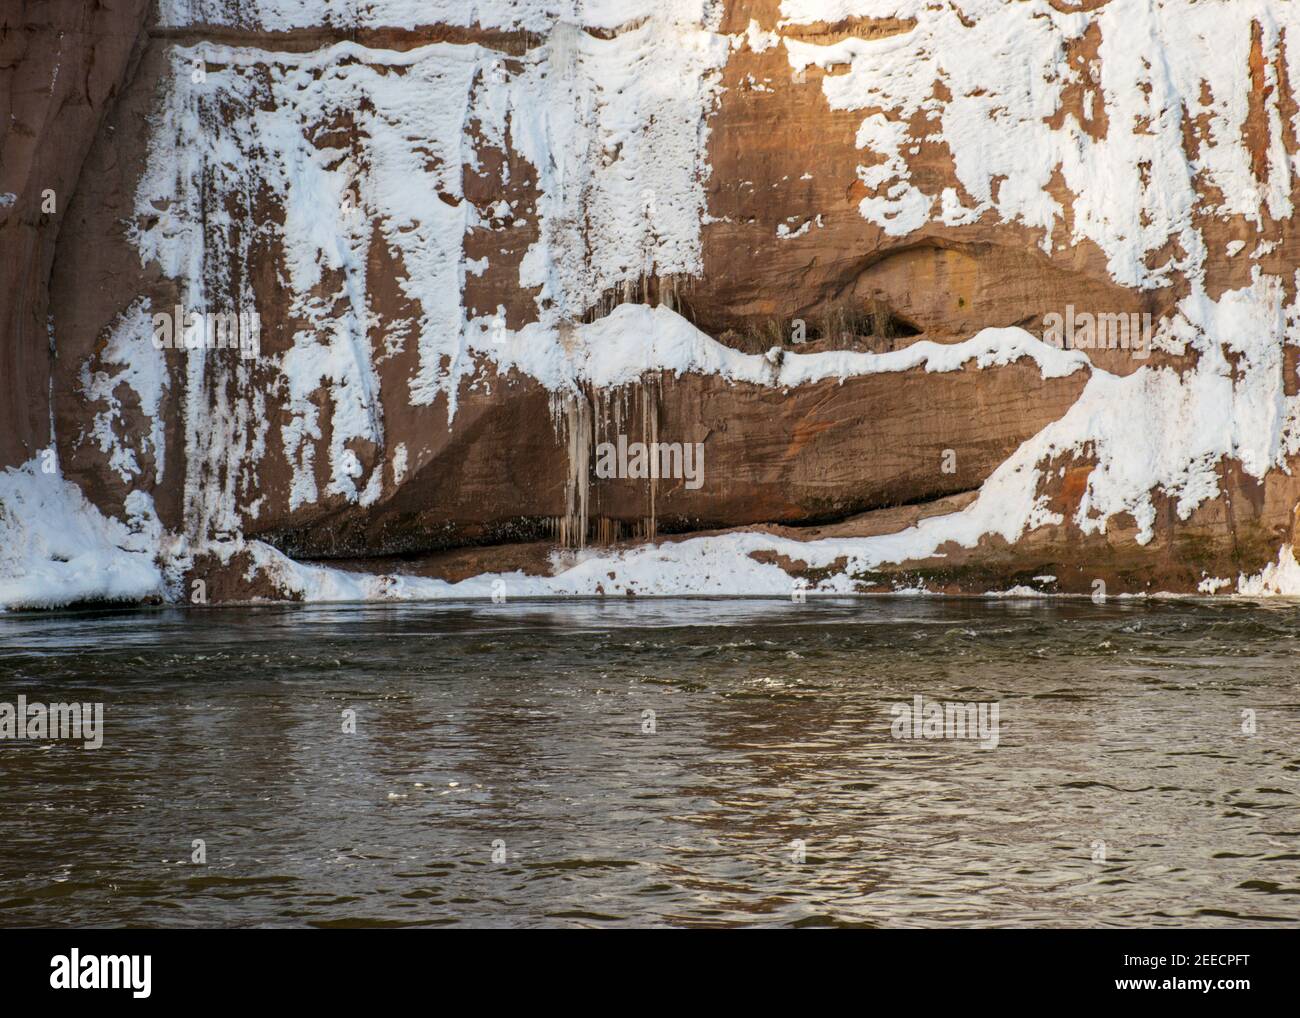 Schöner sonniger Tag, Landschaft mit roten Sandsteinfelsen, die mit Schnee verschneit sind, Eisfall an der Felswand, gefrorener Fluss, Gauja, Kuku Klippen, Lettland Stockfoto